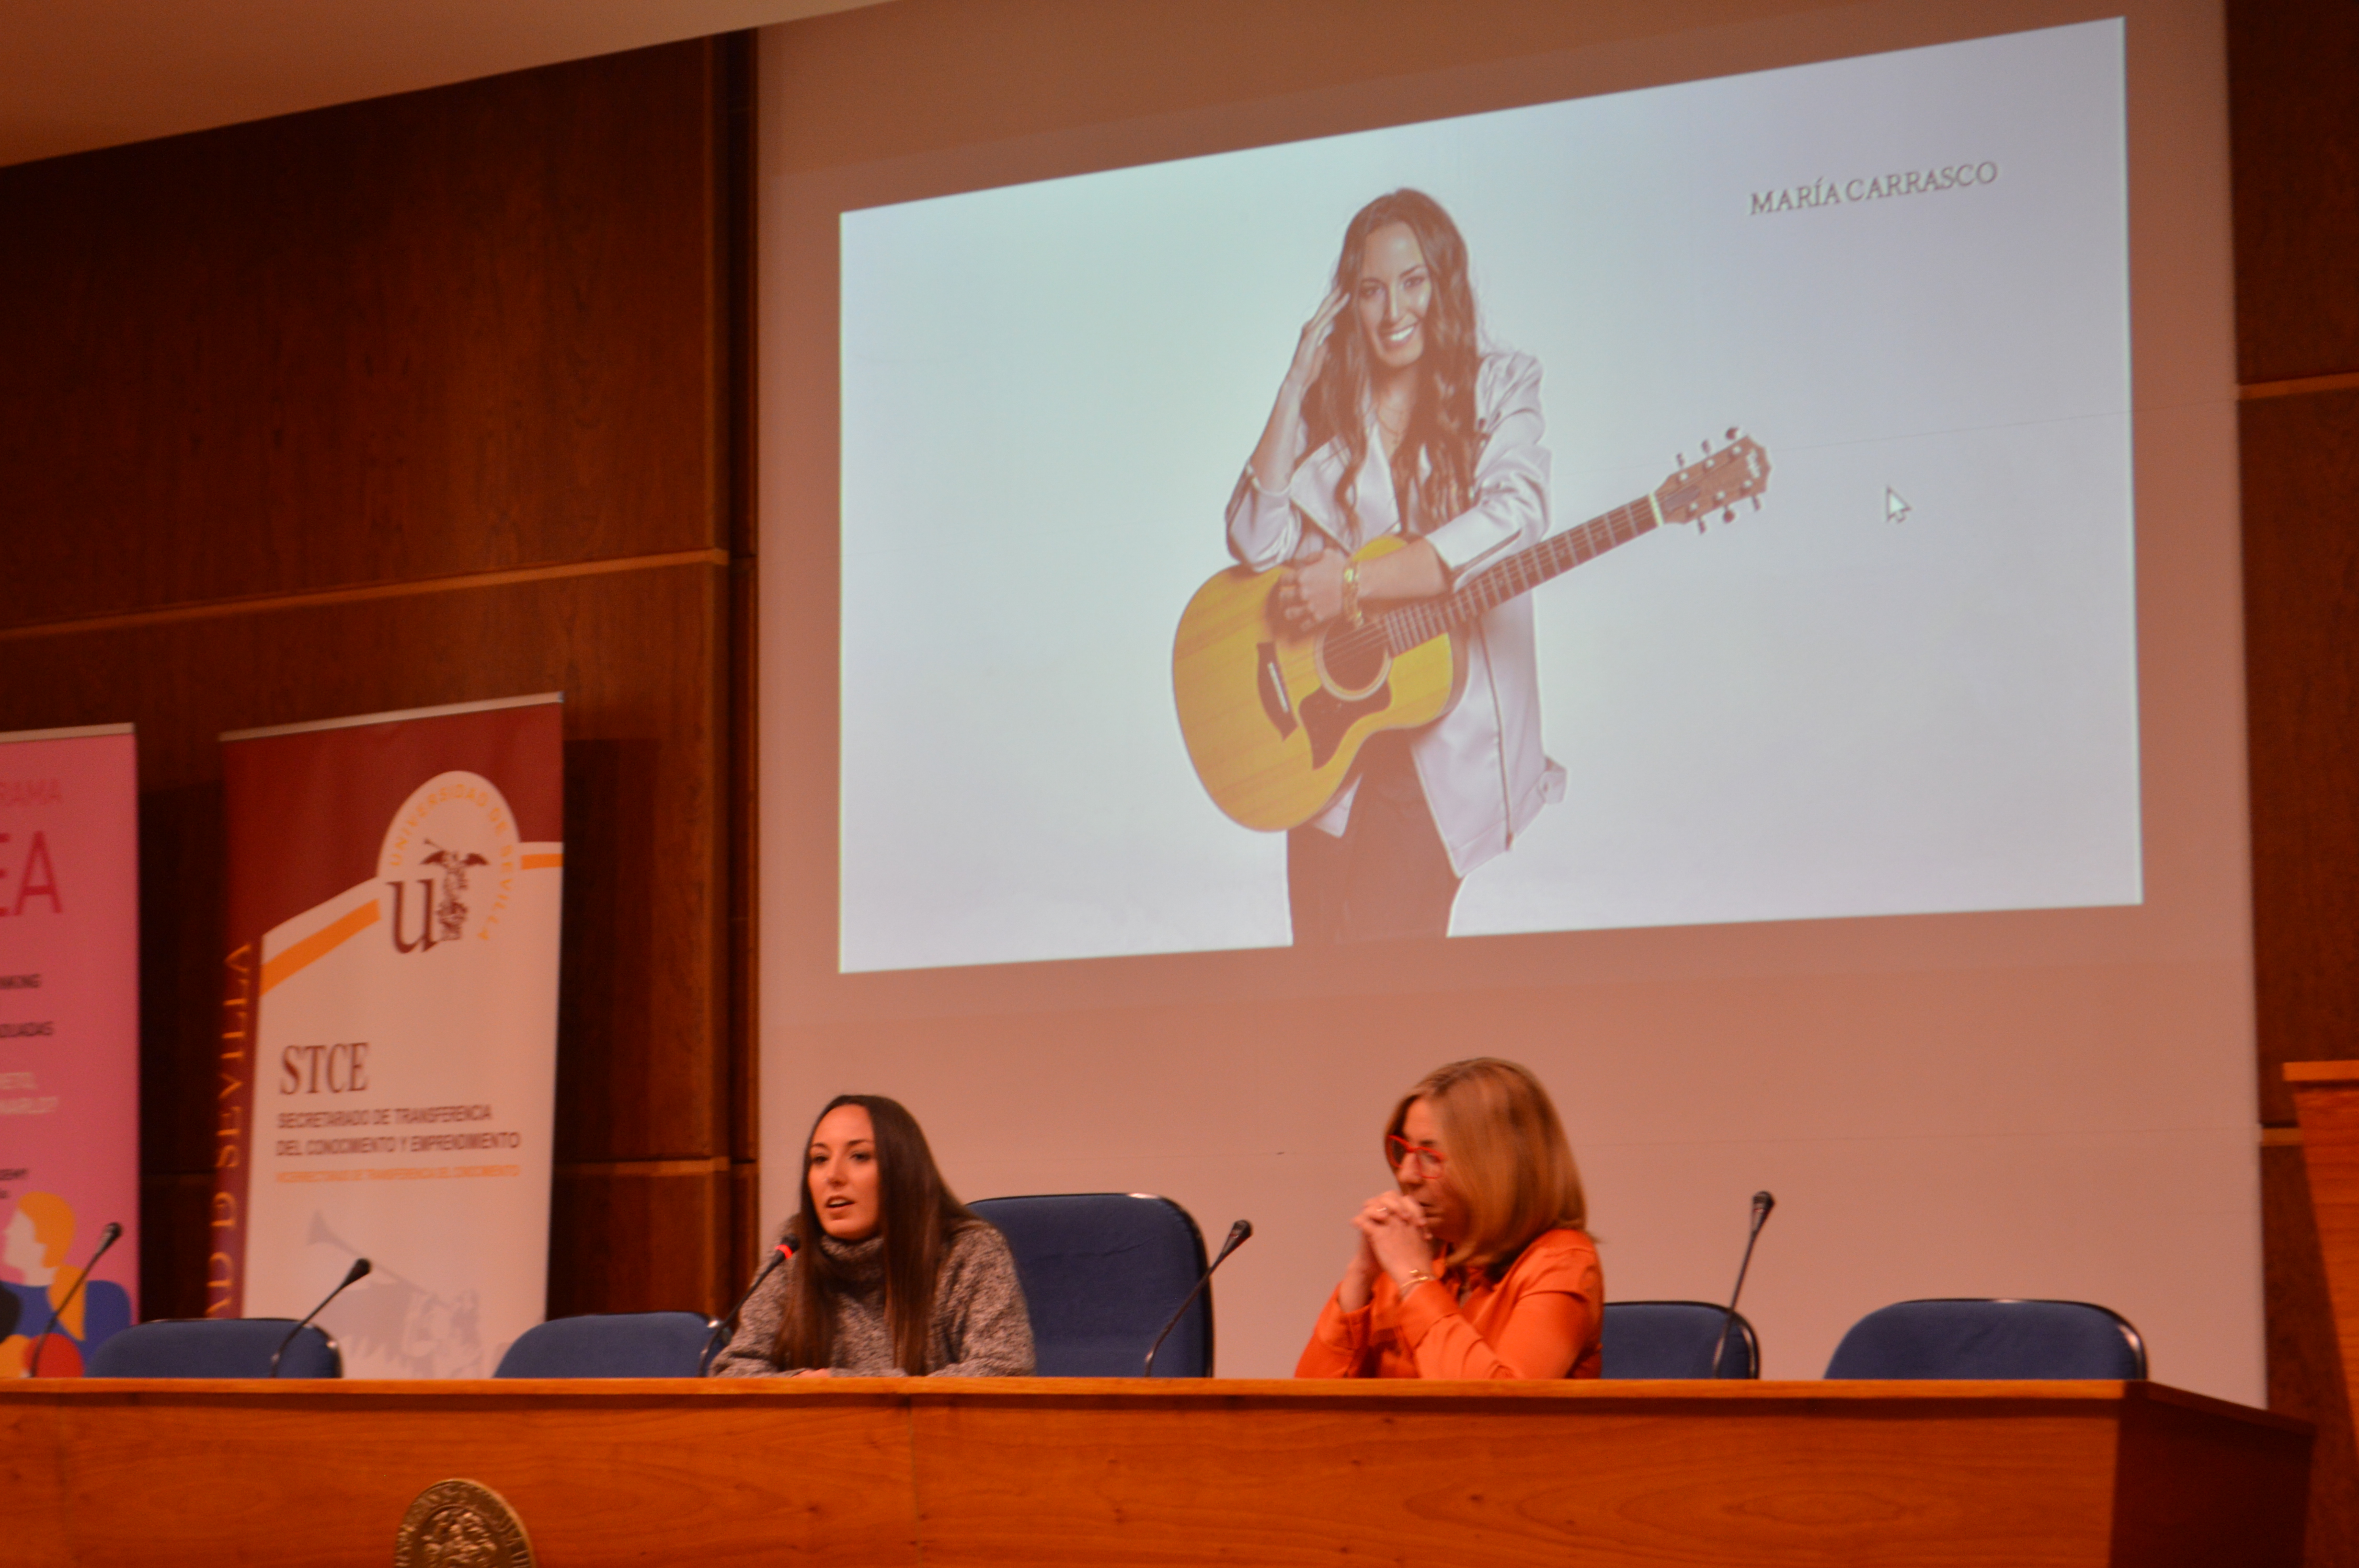 La cantante y compositora María Carrasco participó con su testimonio y su arte